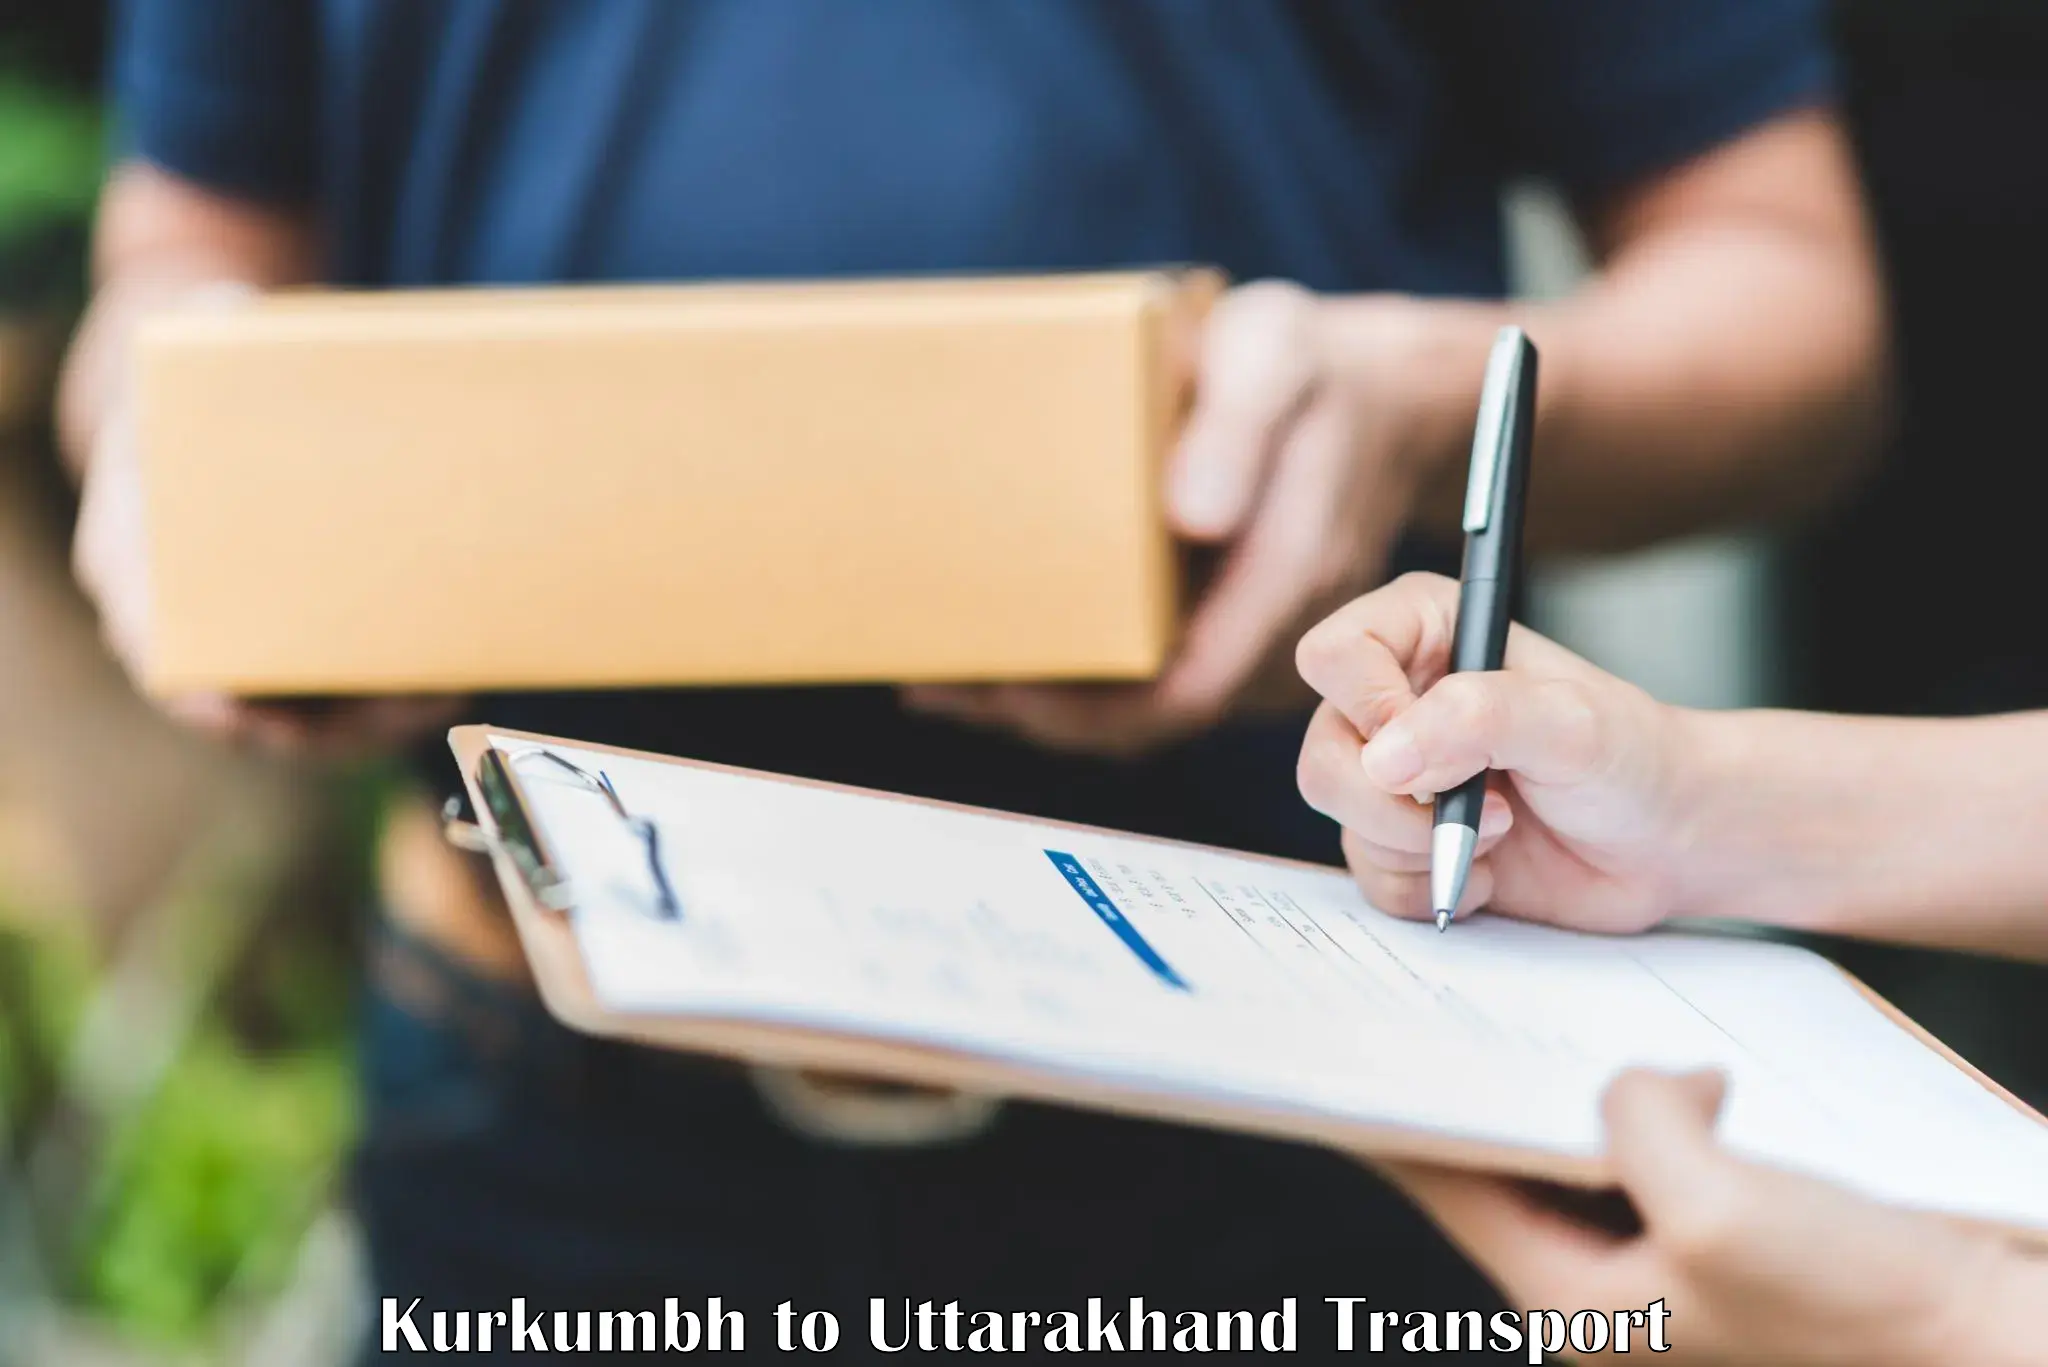 Transport shared services Kurkumbh to IIT Roorkee